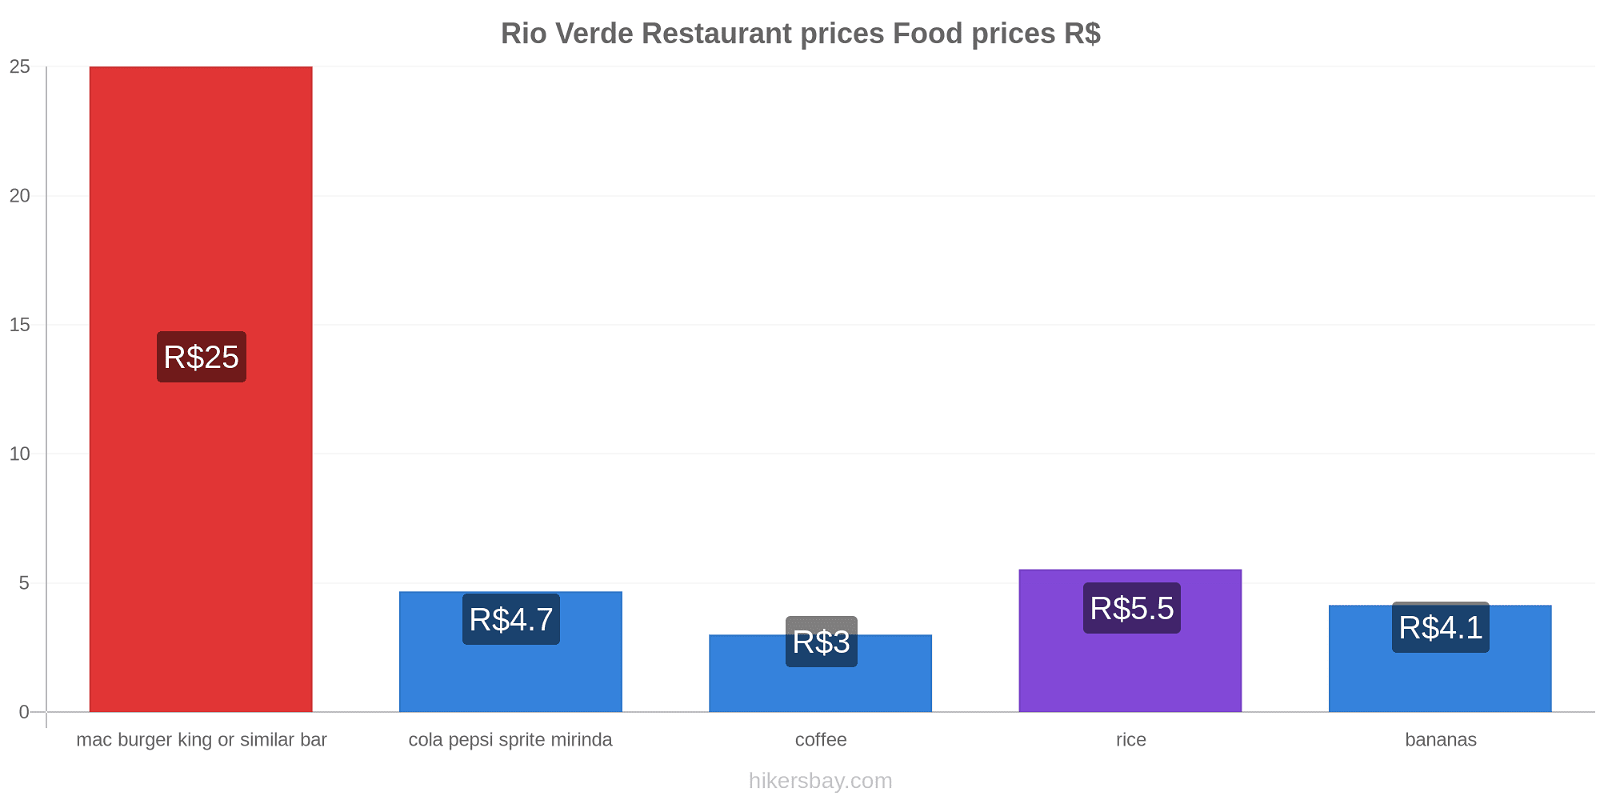 Rio Verde price changes hikersbay.com